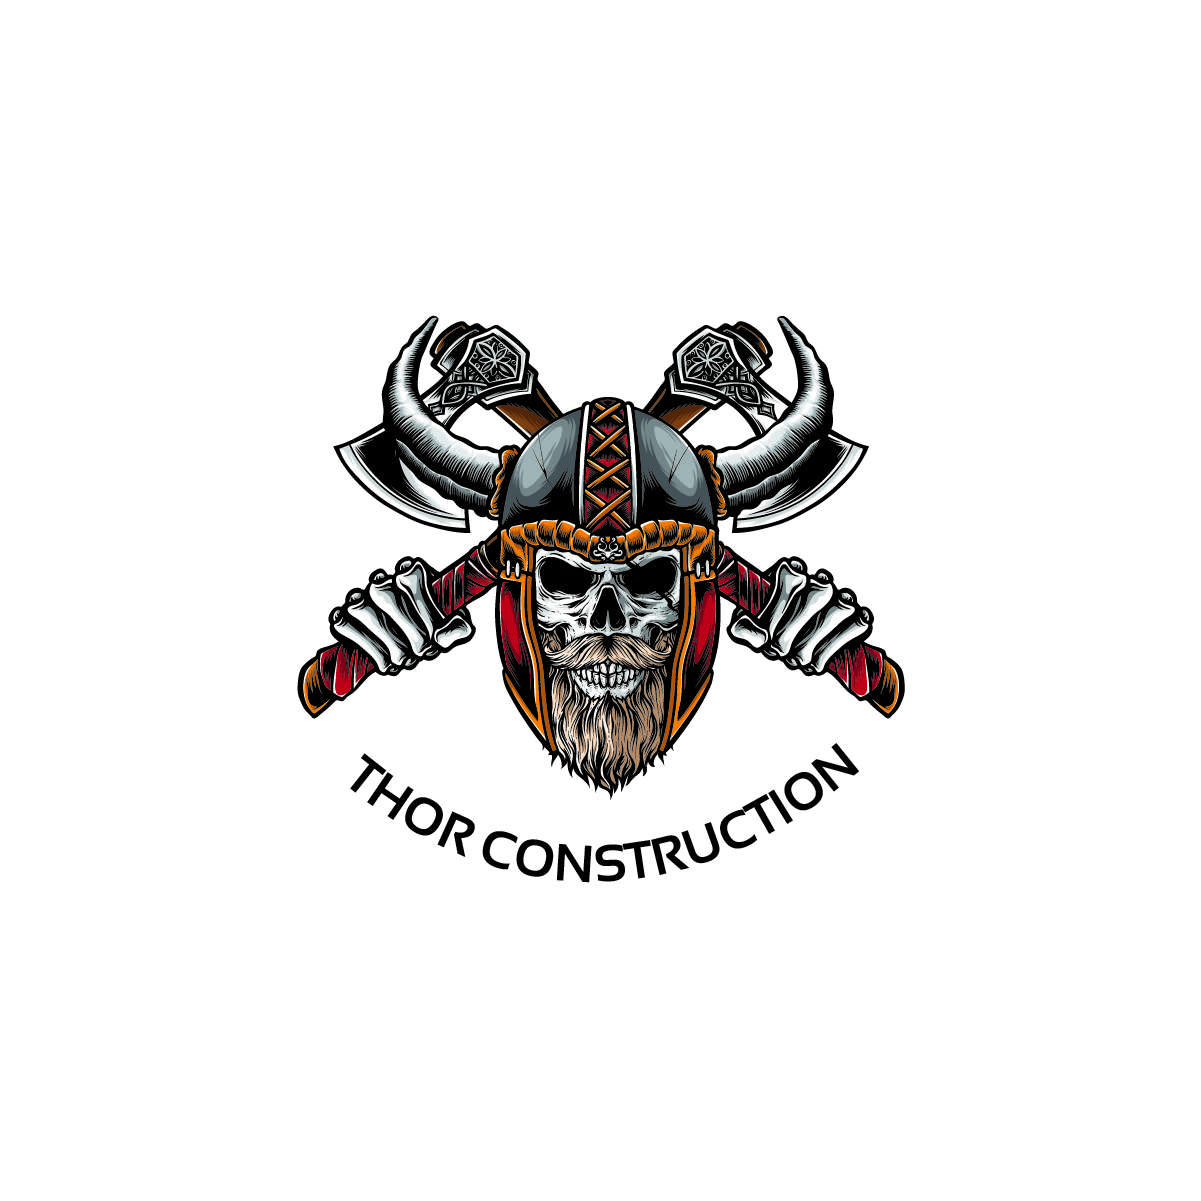 Thor Construction Company Logo